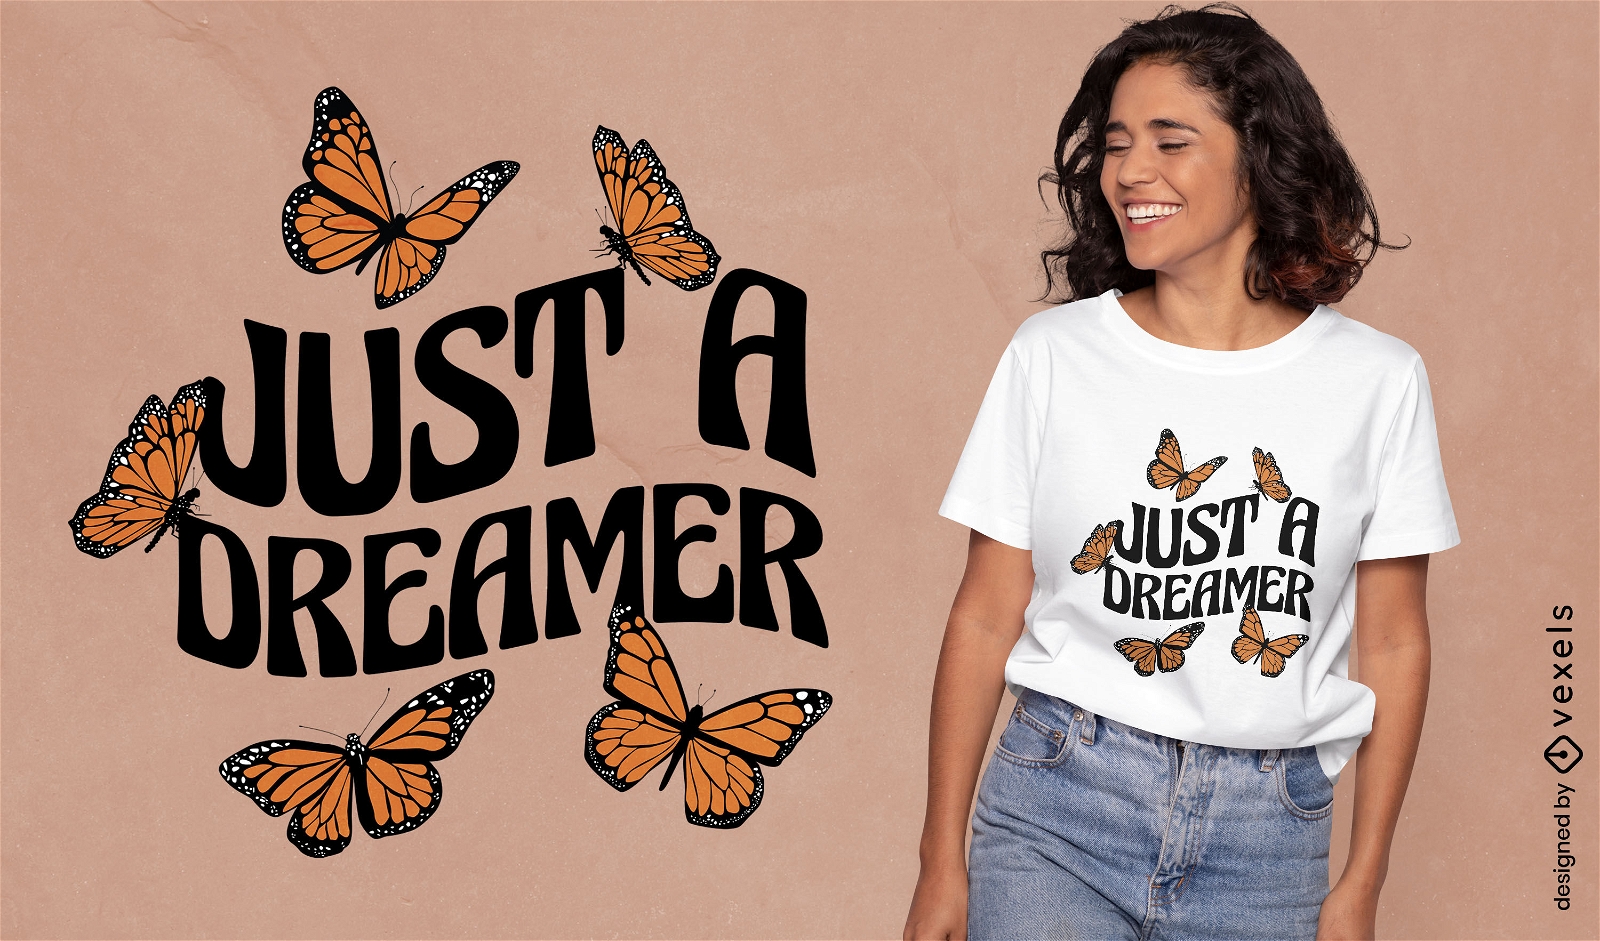 Just a dreamer butterflies lettering t-shirt design